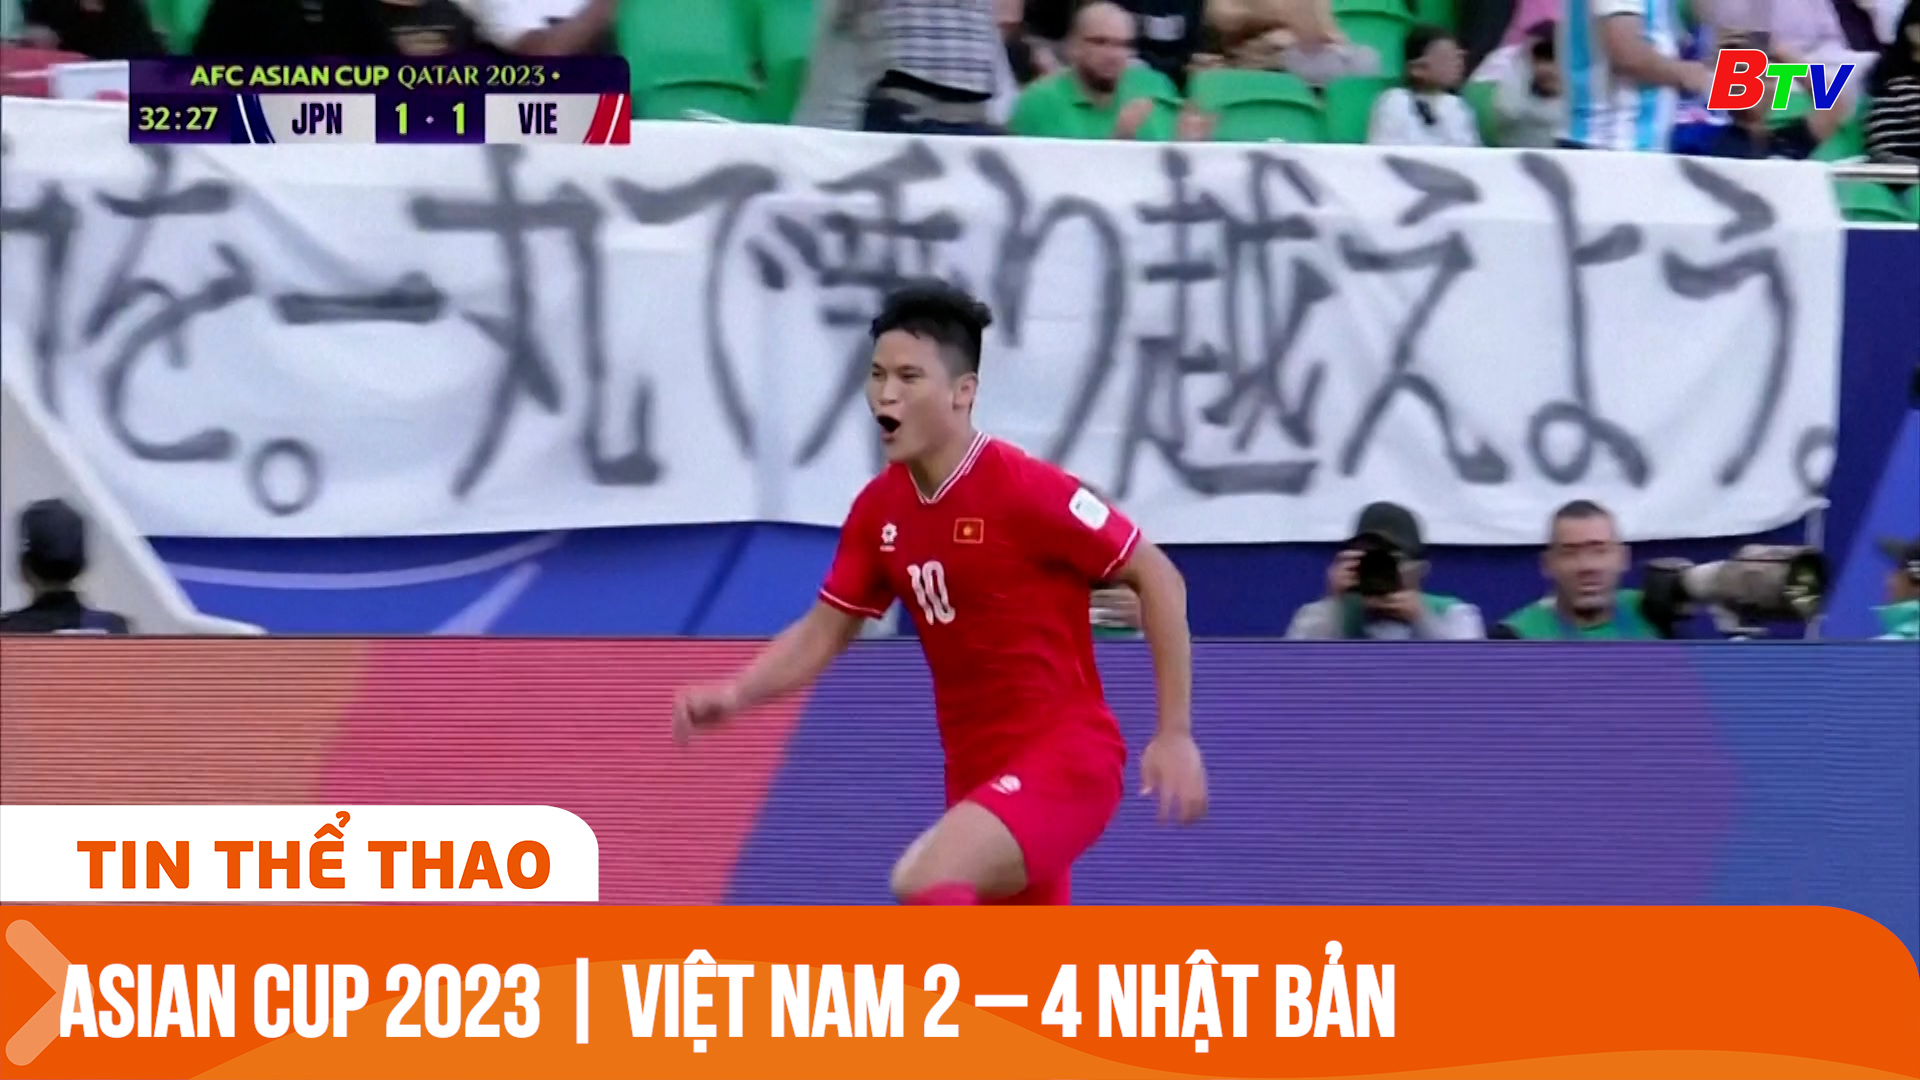 Asian Cup 2023 | Việt Nam 2 – 4 Nhật Bản, các cầu thủ không làm cổ động viên thất vọng | Tin Thể thao 24h	